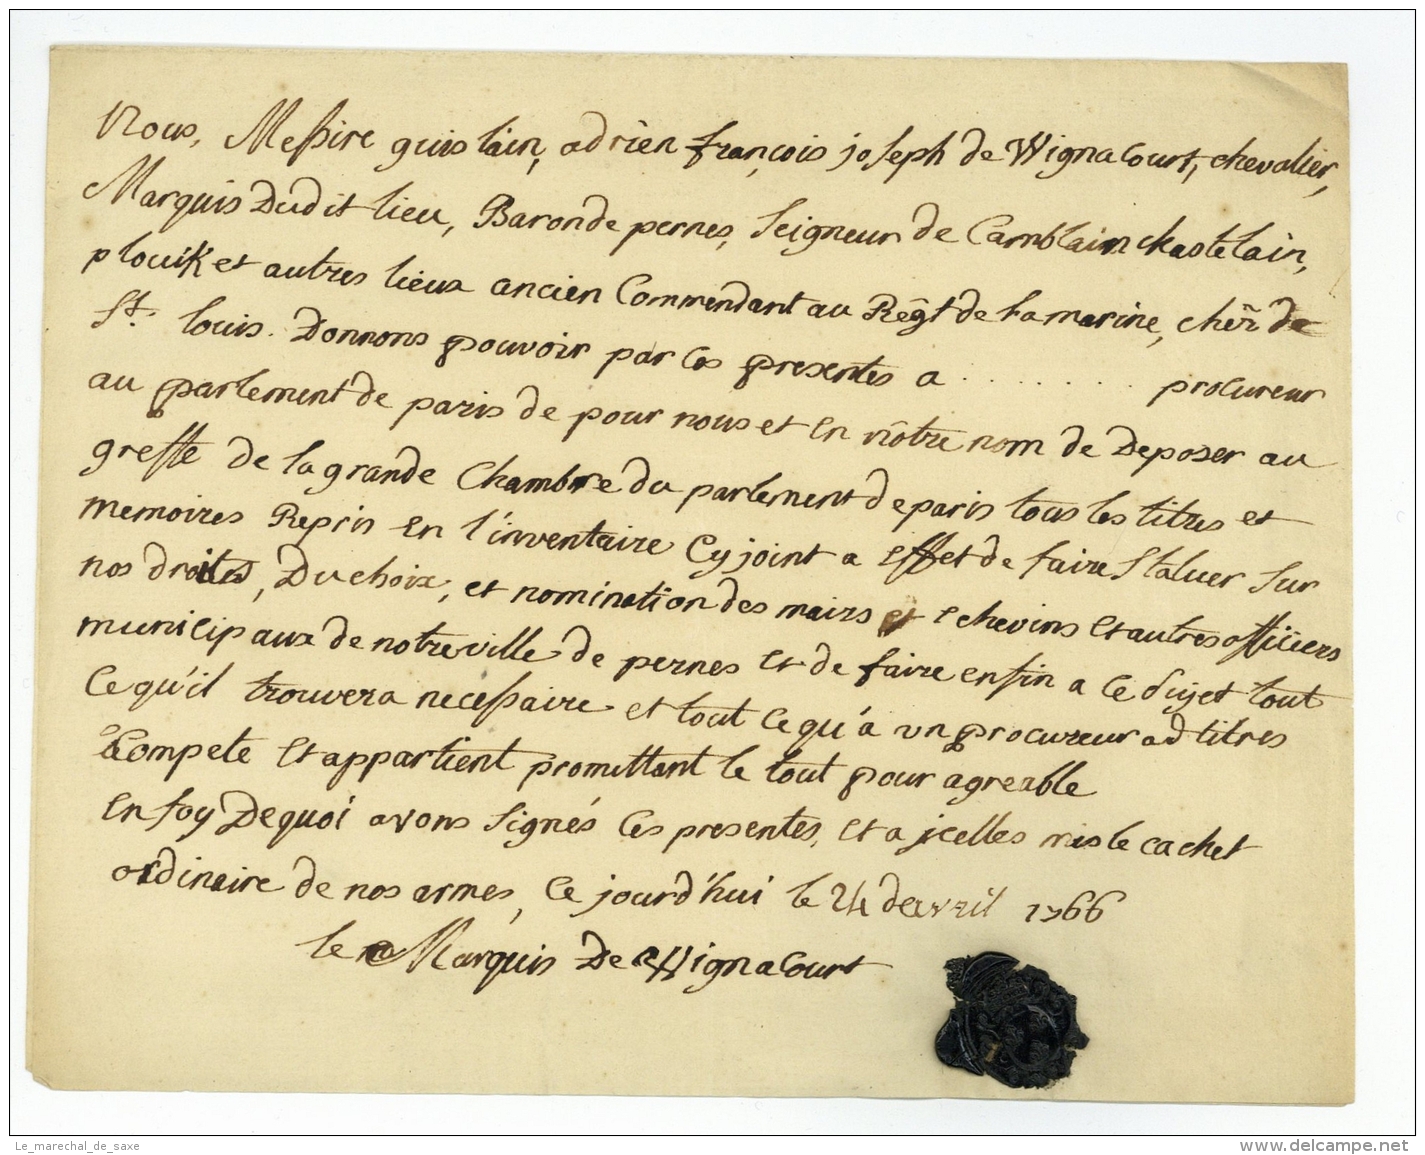 WIGNACOURT, Ghislain-Joseph Adrien Francois De (1715-1772). Marquis De Wignacourt, Baron De Pernes, Seigneur De Dourton - Manuscripts